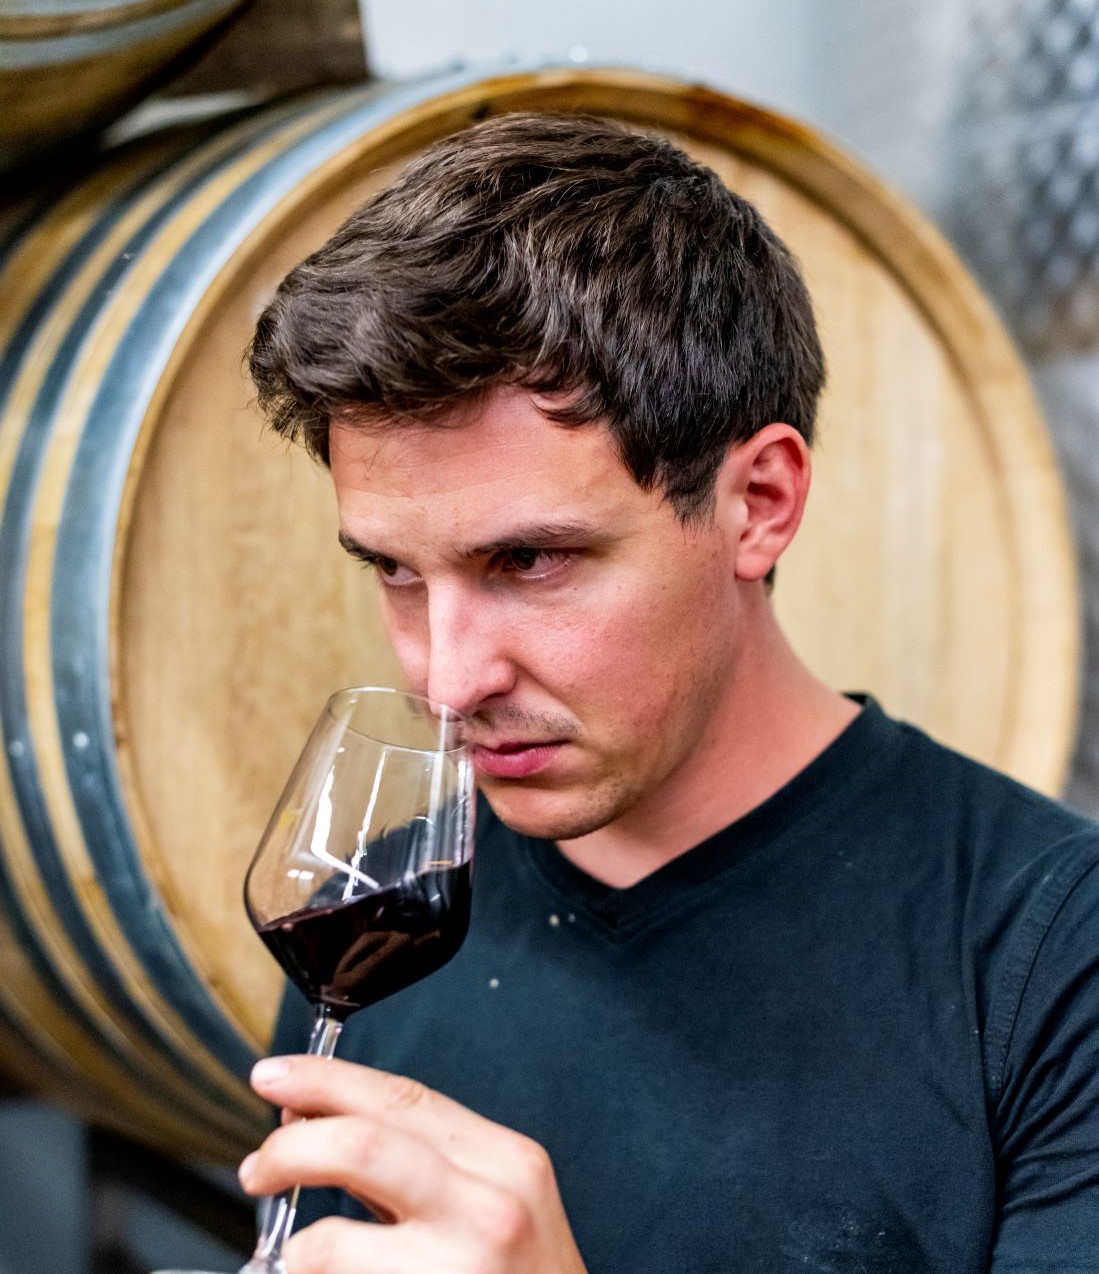 Le jeune vigneron, visage sérieux et chemise bleue, hume un verre de vin de sa cave.